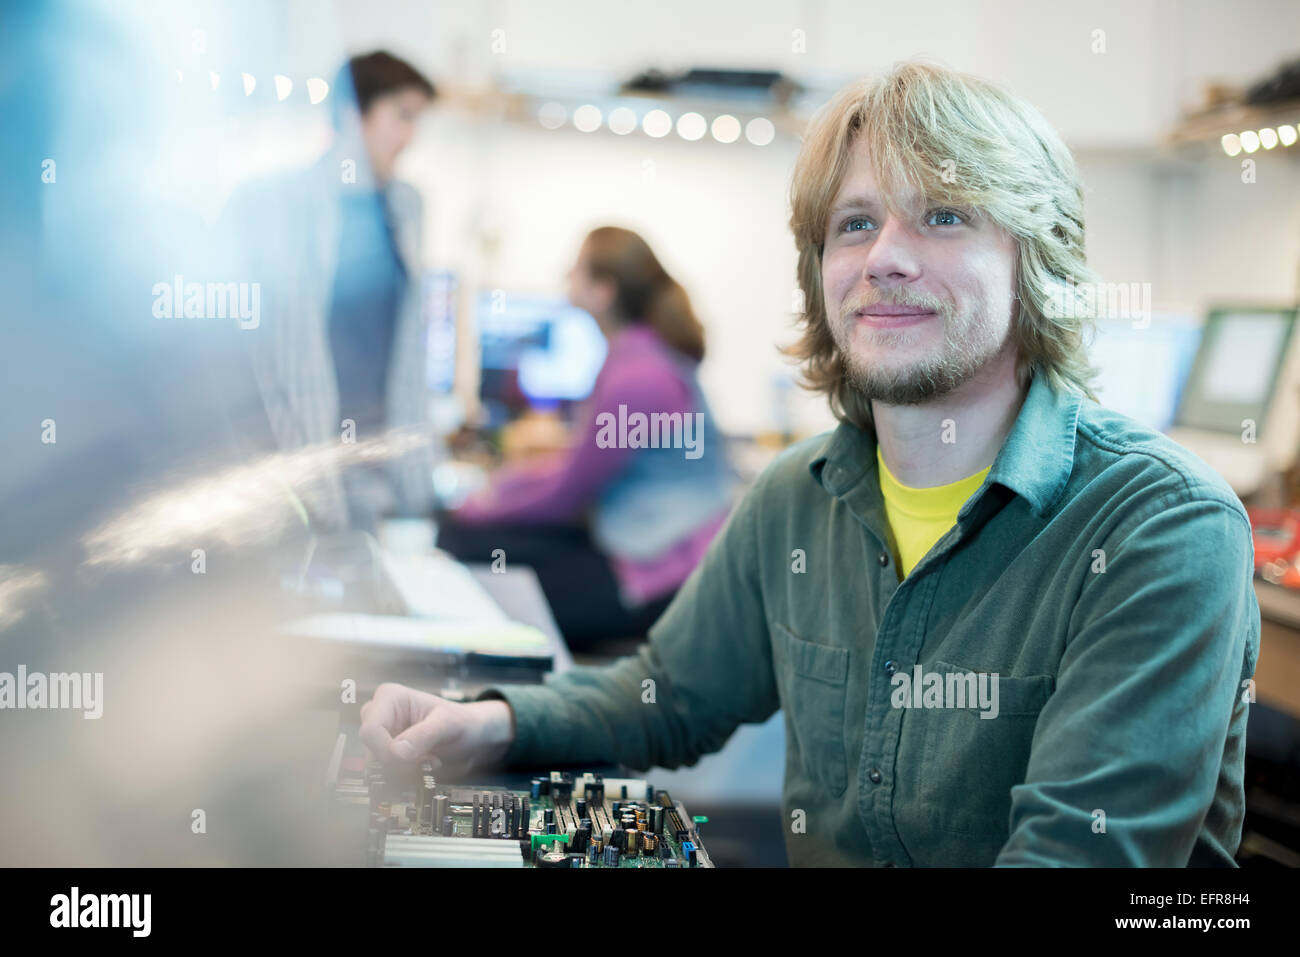 Ein junger Mann und zwei Kollegen in einem Computer-Shop. Stockfoto